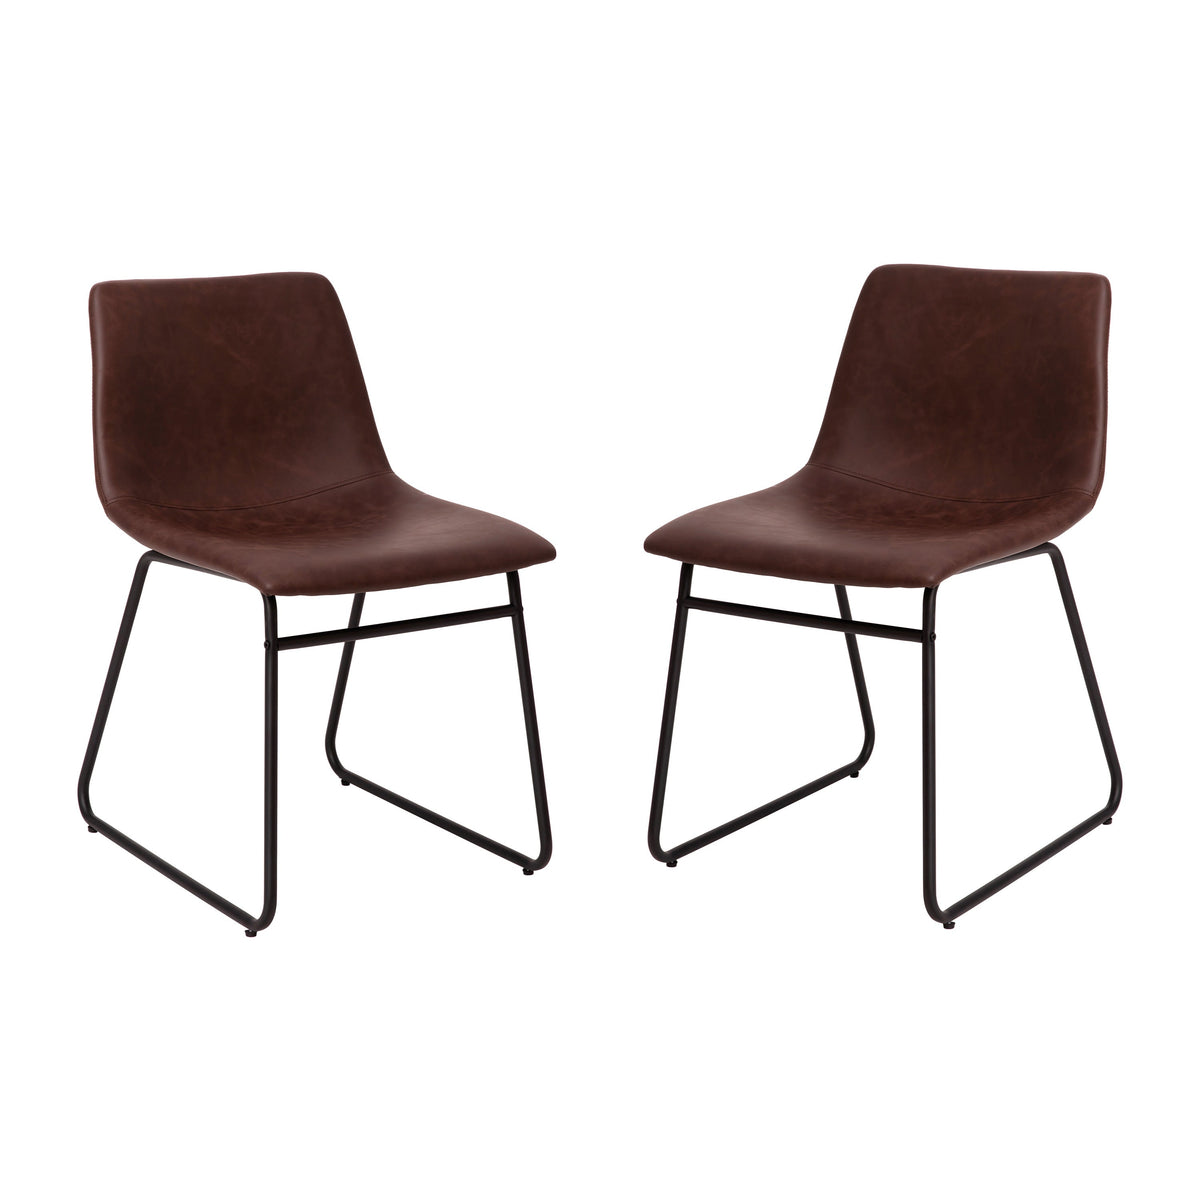 Dark Brown LeatherSoft/Black Frame |#| 18 Inch Indoor Dining Table Chairs, Dark Brown LeatherSoft/Black Frame-Set of 2